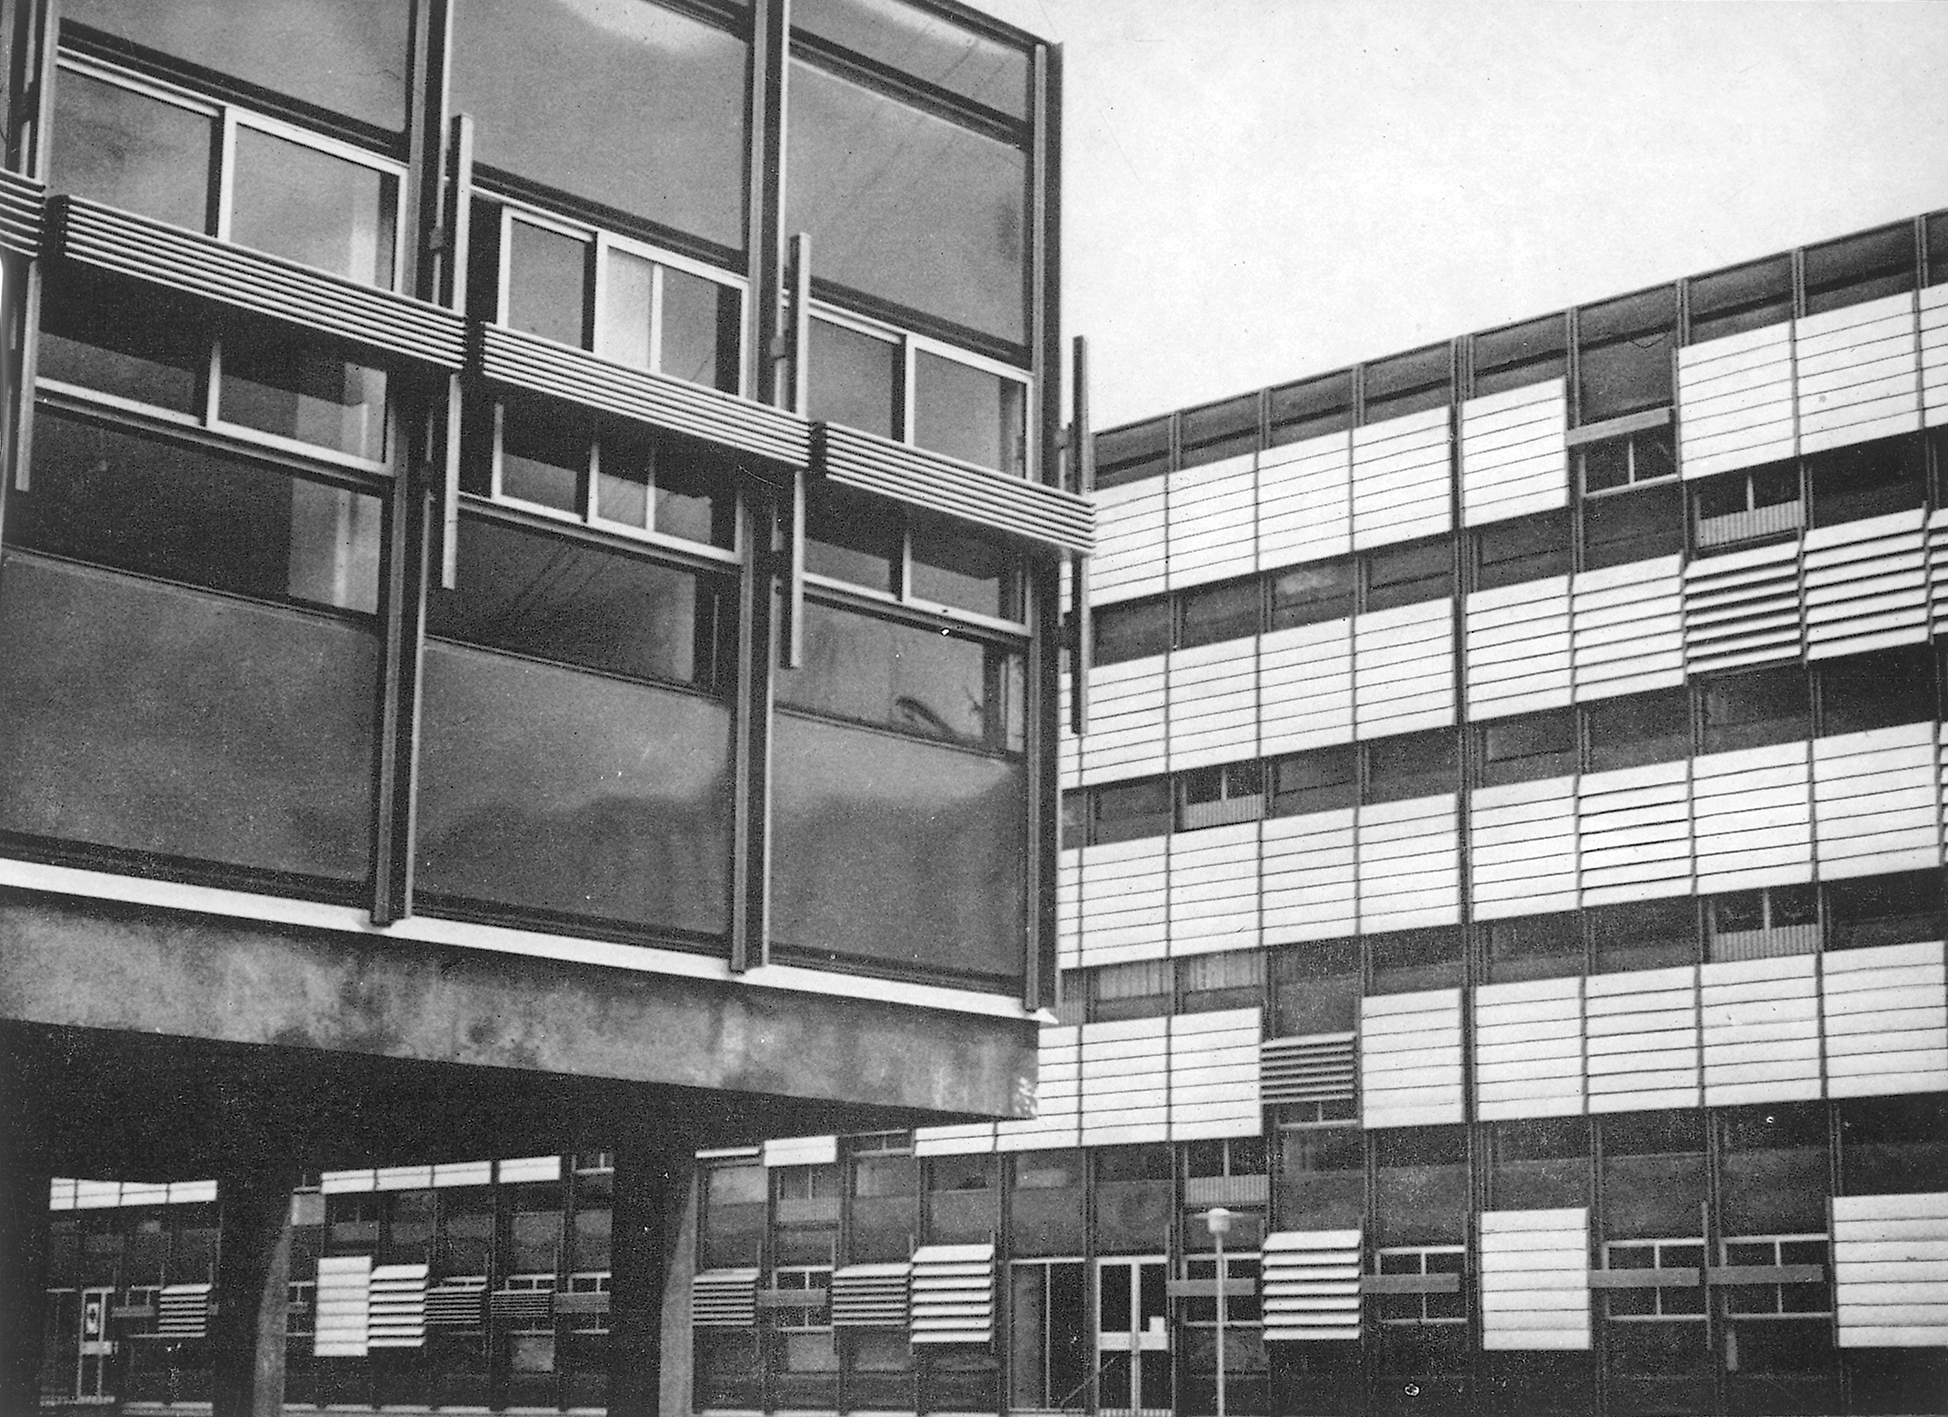 Cité scolaire de La Dullague, Béziers (D. Badani, P. Roux-Dorlut, arch., 1964). Panneaux de façade brise-soleil à lames orientables conçus par Jean Prouvé, c. 1965.